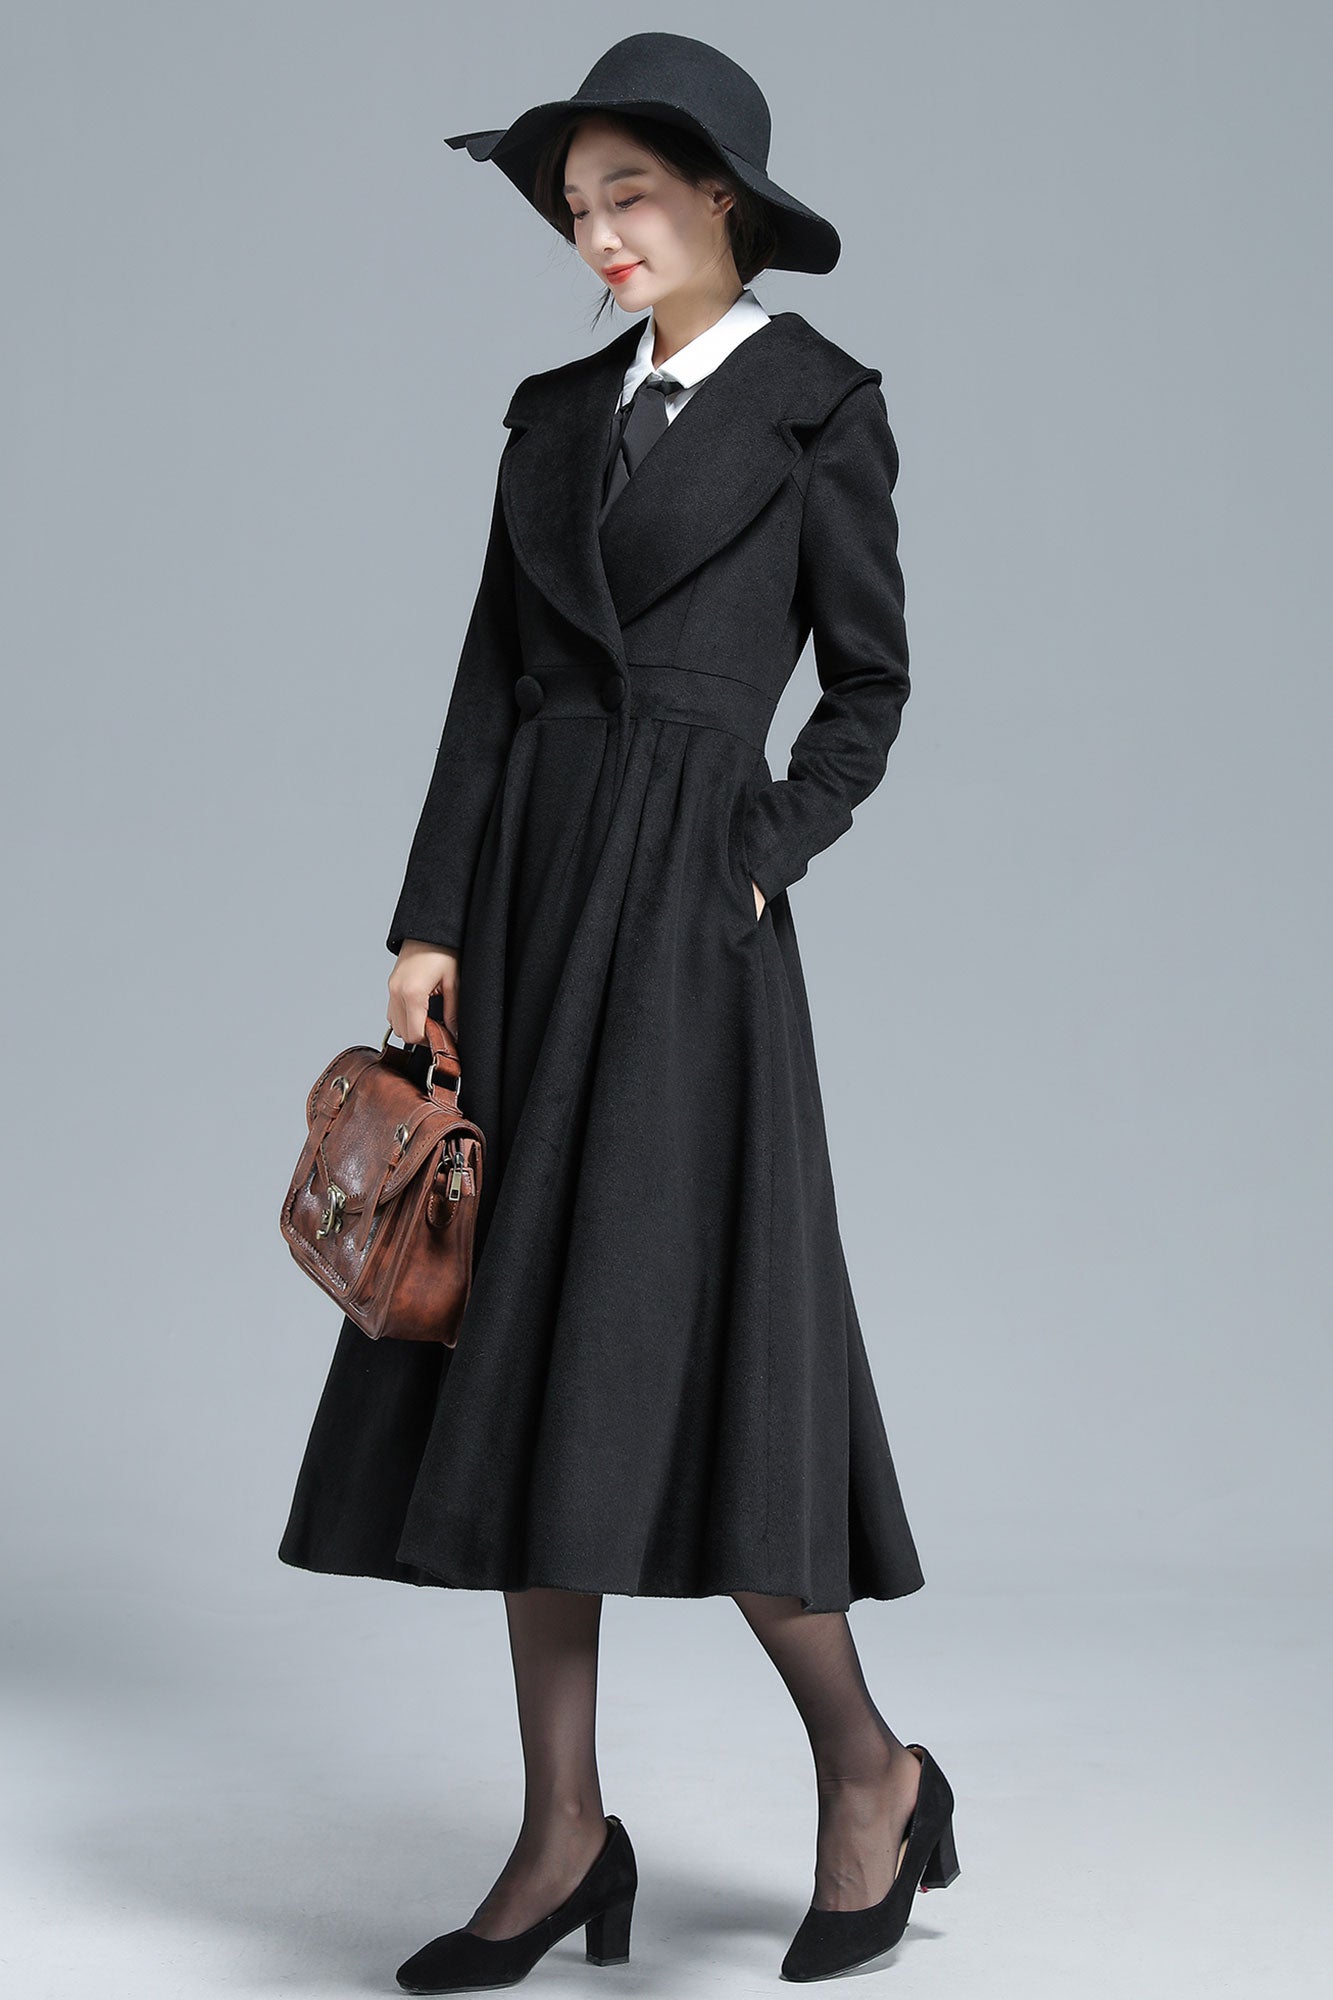 Vintage Inspired Black Long Wool Princess Coat 3130#